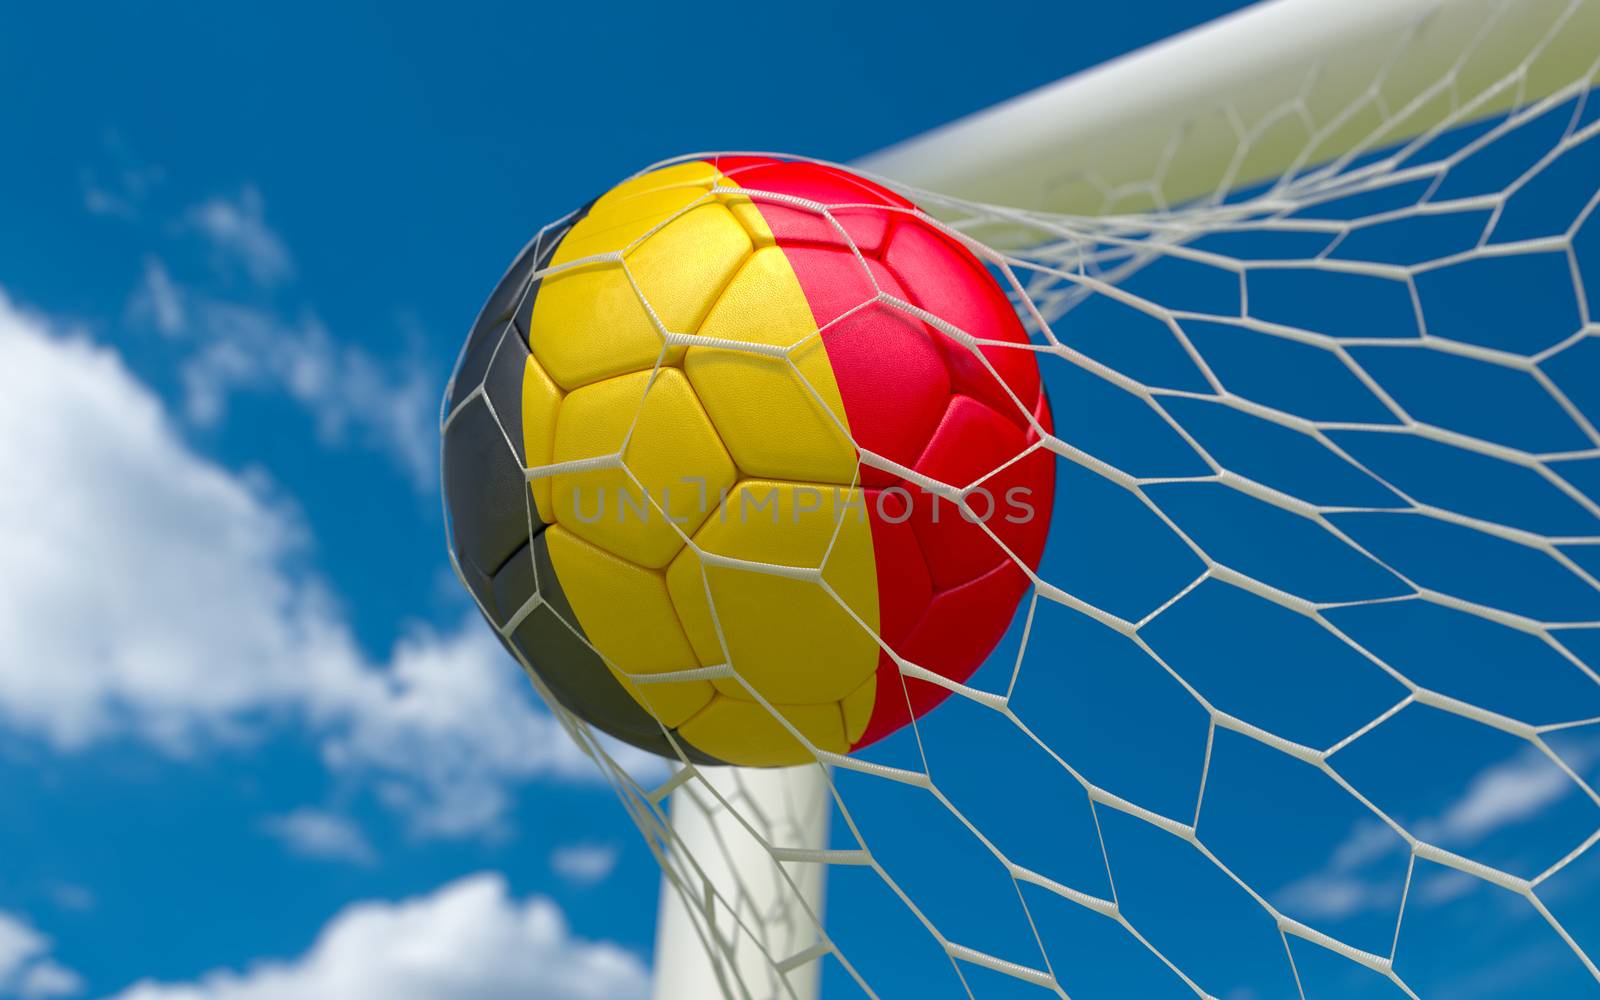 Belgium flag and soccer ball, football in goal net